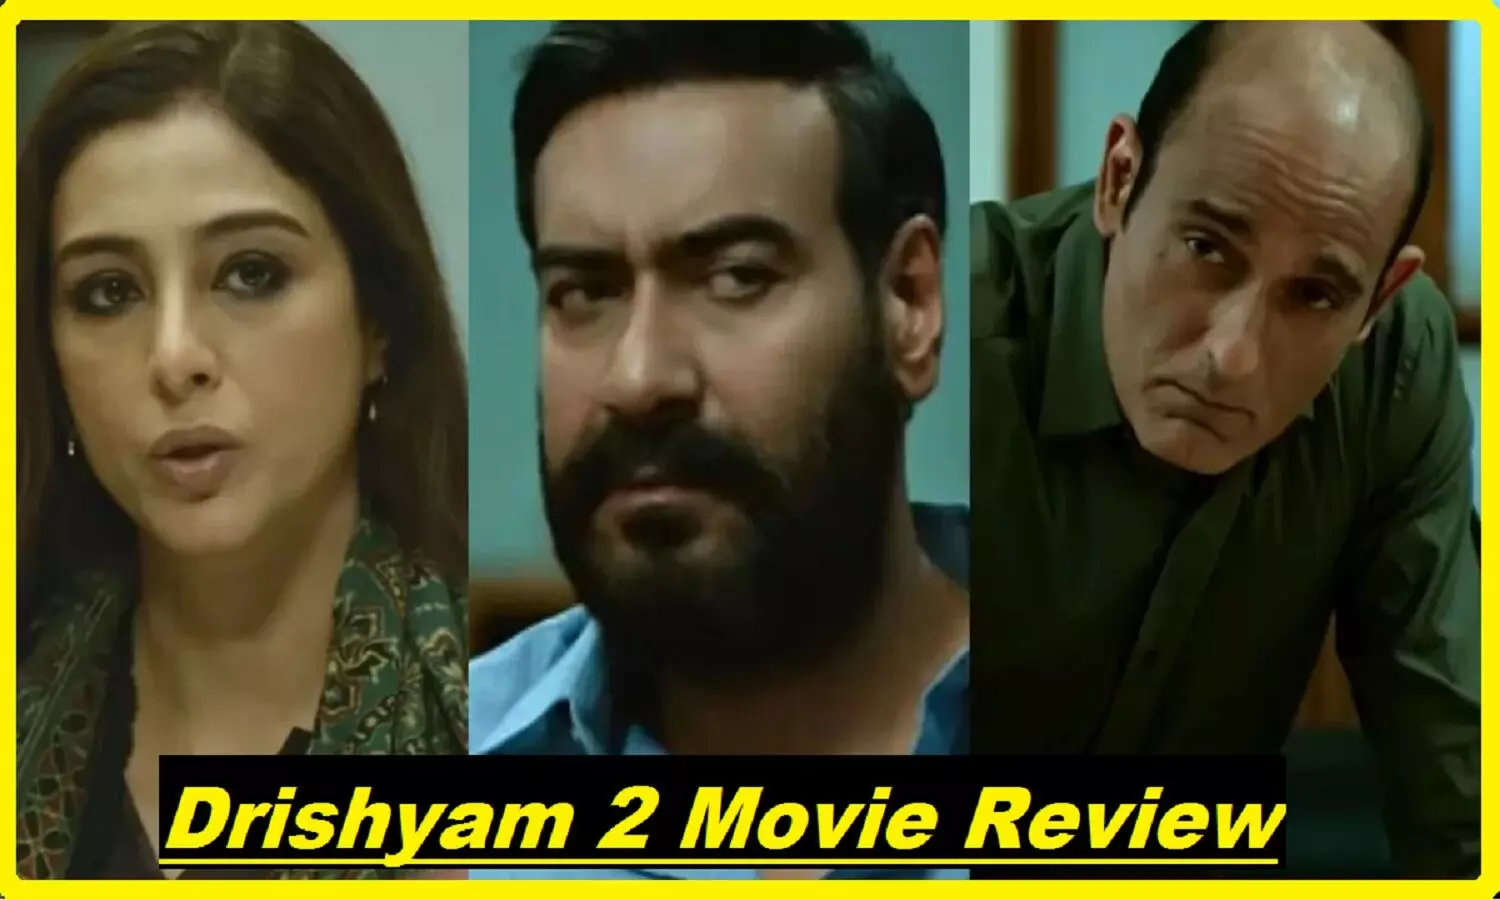 Drishyam 2 Movie Review: कैसी है दृश्यम 2? देखने से पहले रिव्यू पढ़ लेंगे तो ठीक रहेगा